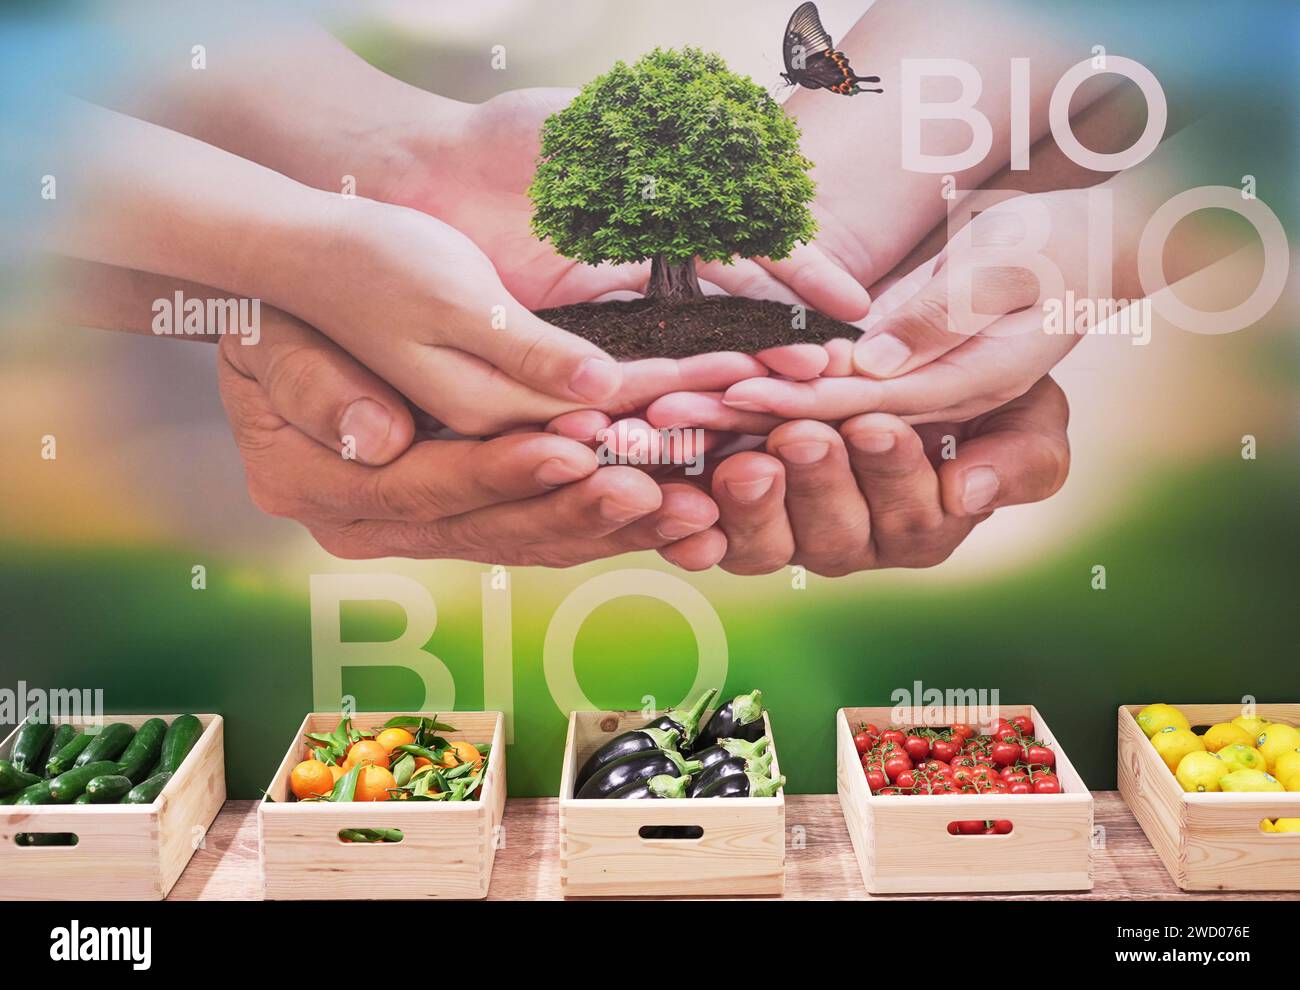 Milan, Italie - 17 janvier 2024 : caisses de fruits et légumes biologiques dans un magasin en arrière-plan une affiche invitant les gens à prendre soin de la nature. Banque D'Images